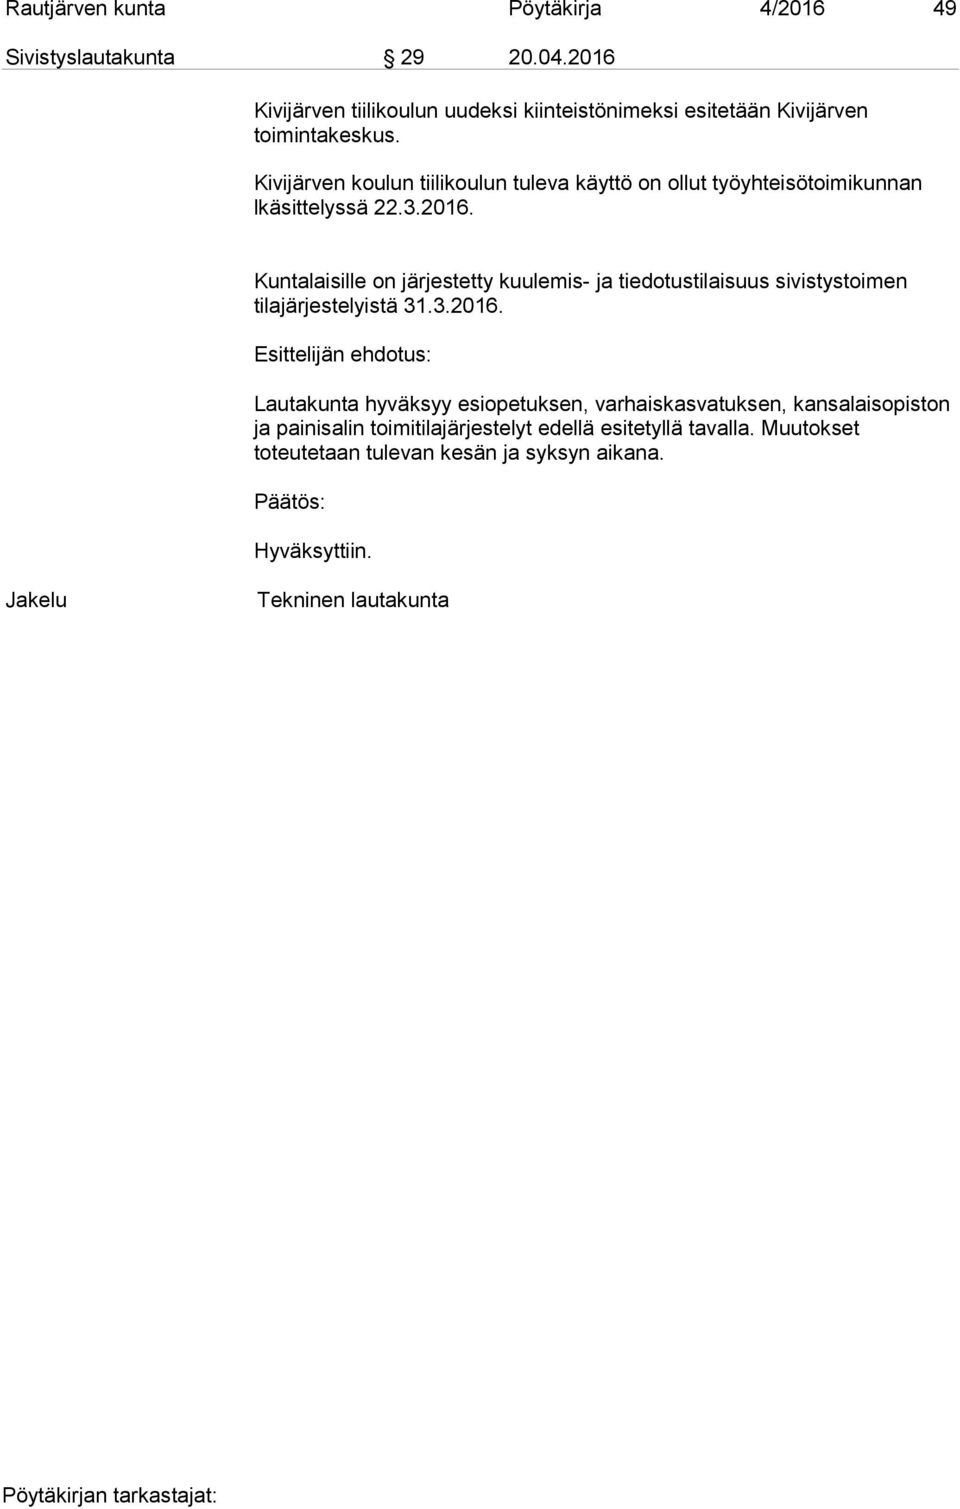 Kivijärven koulun tiilikoulun tuleva käyttö on ollut työyhteisötoimikunnan lkäsittelyssä 22.3.2016.